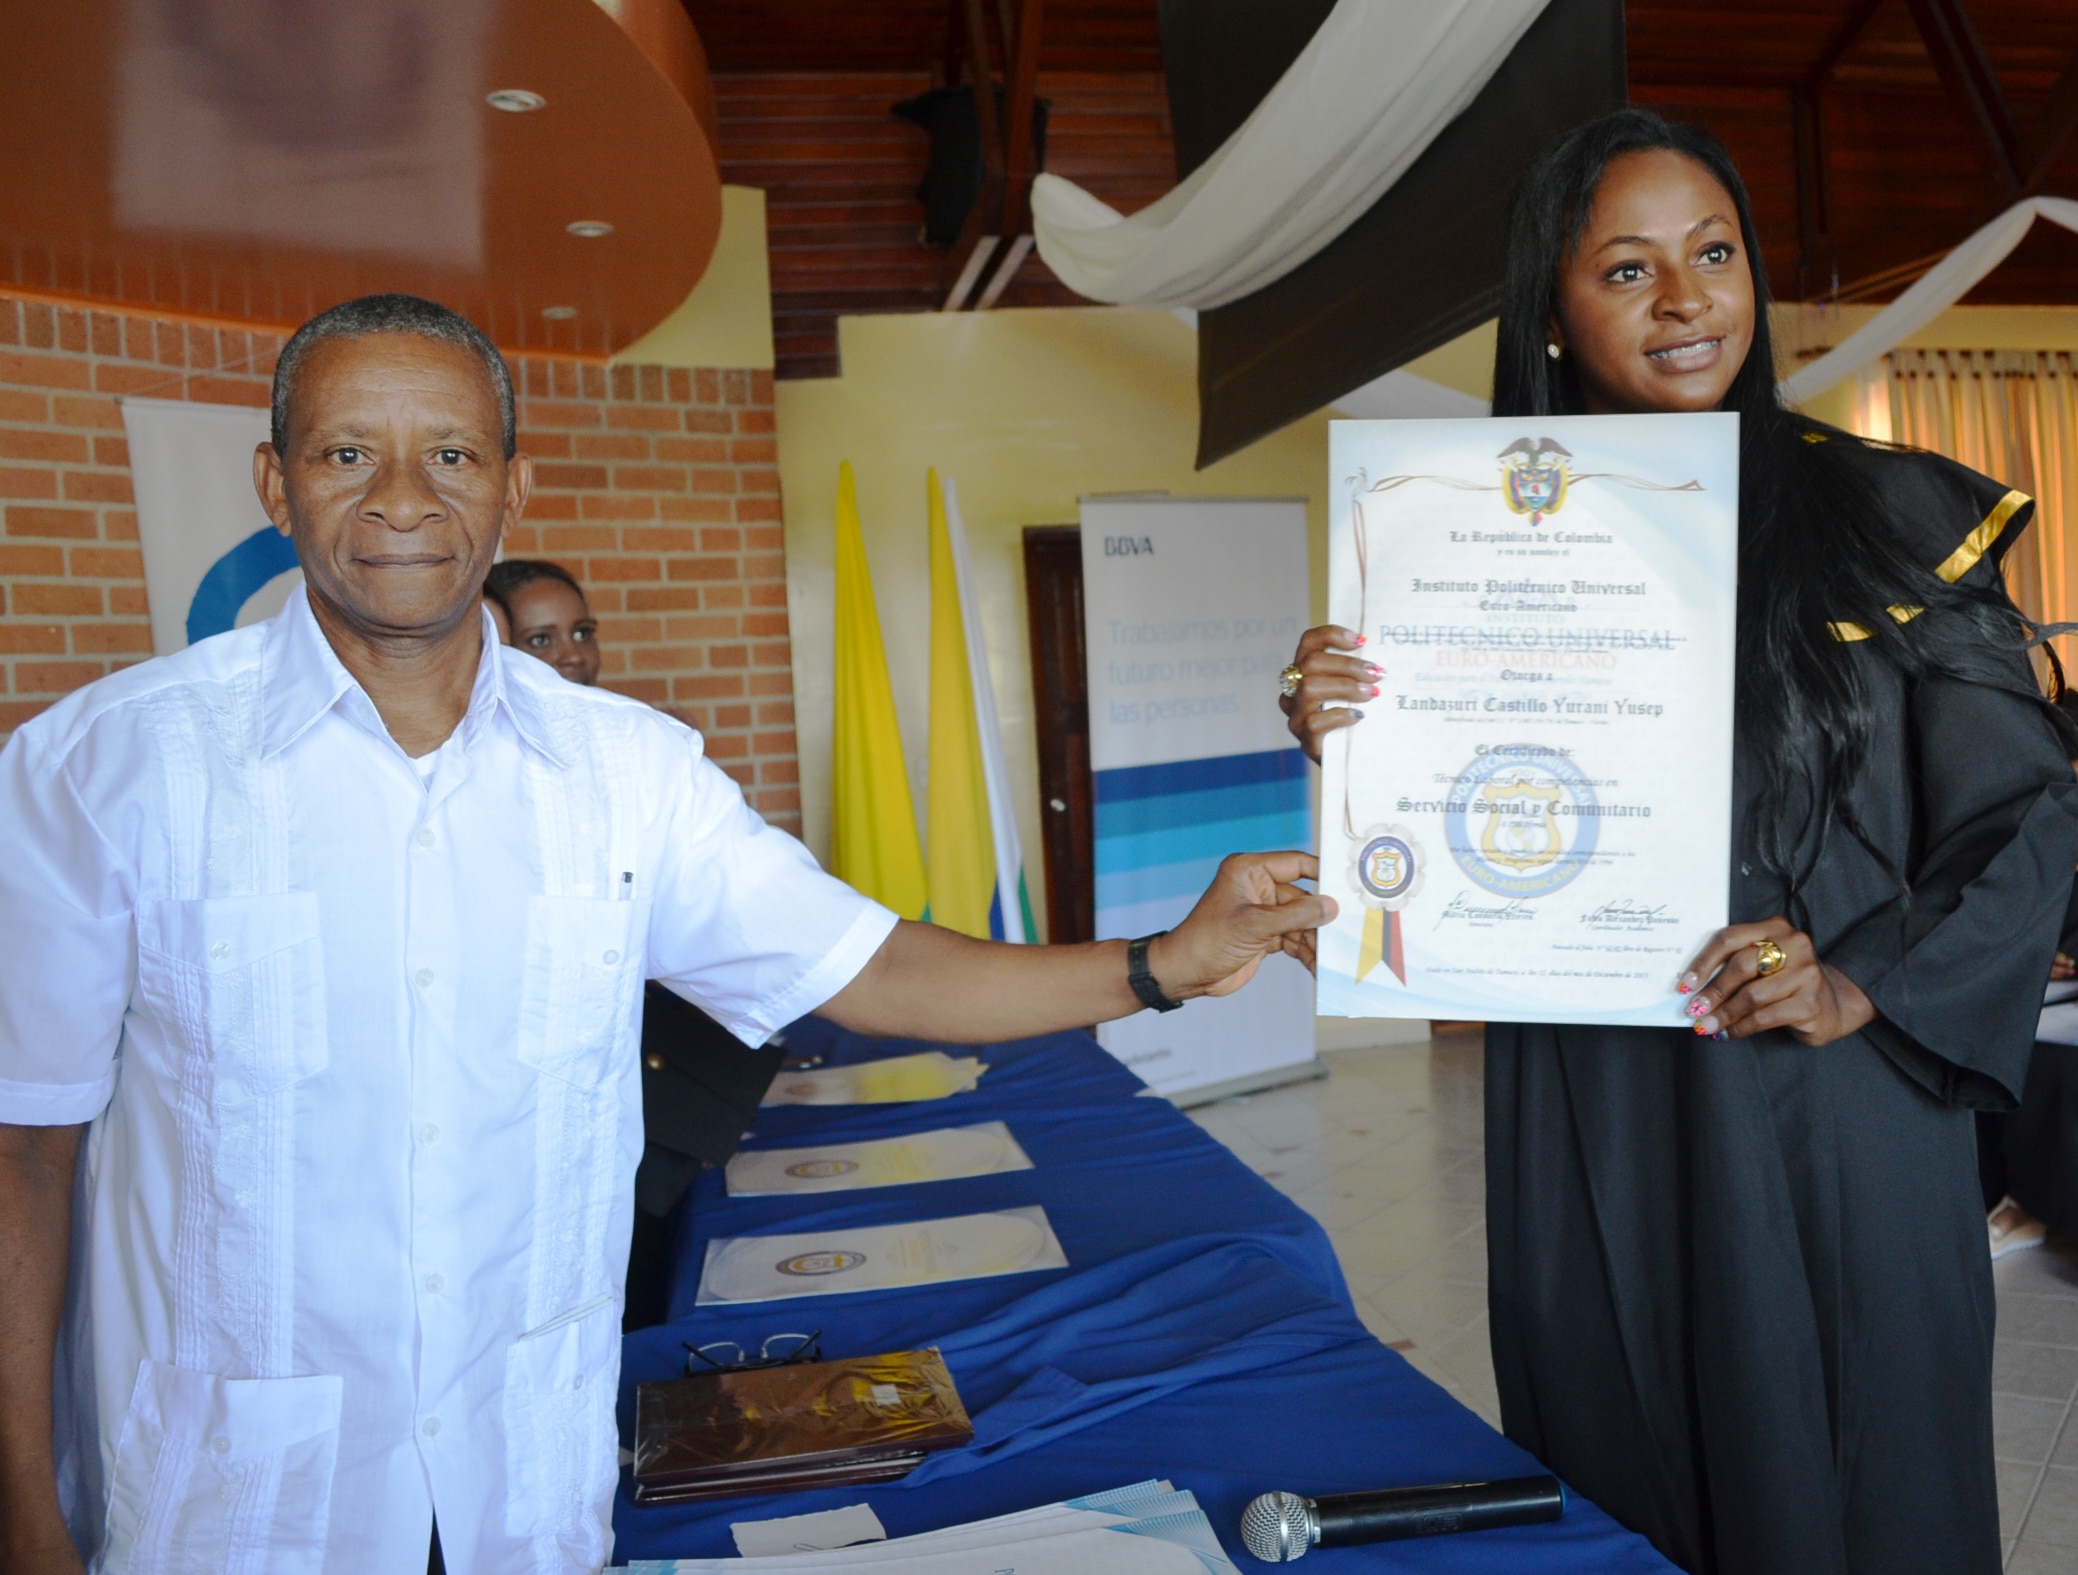 Fotografía de entrega diplomas beca Tumaco